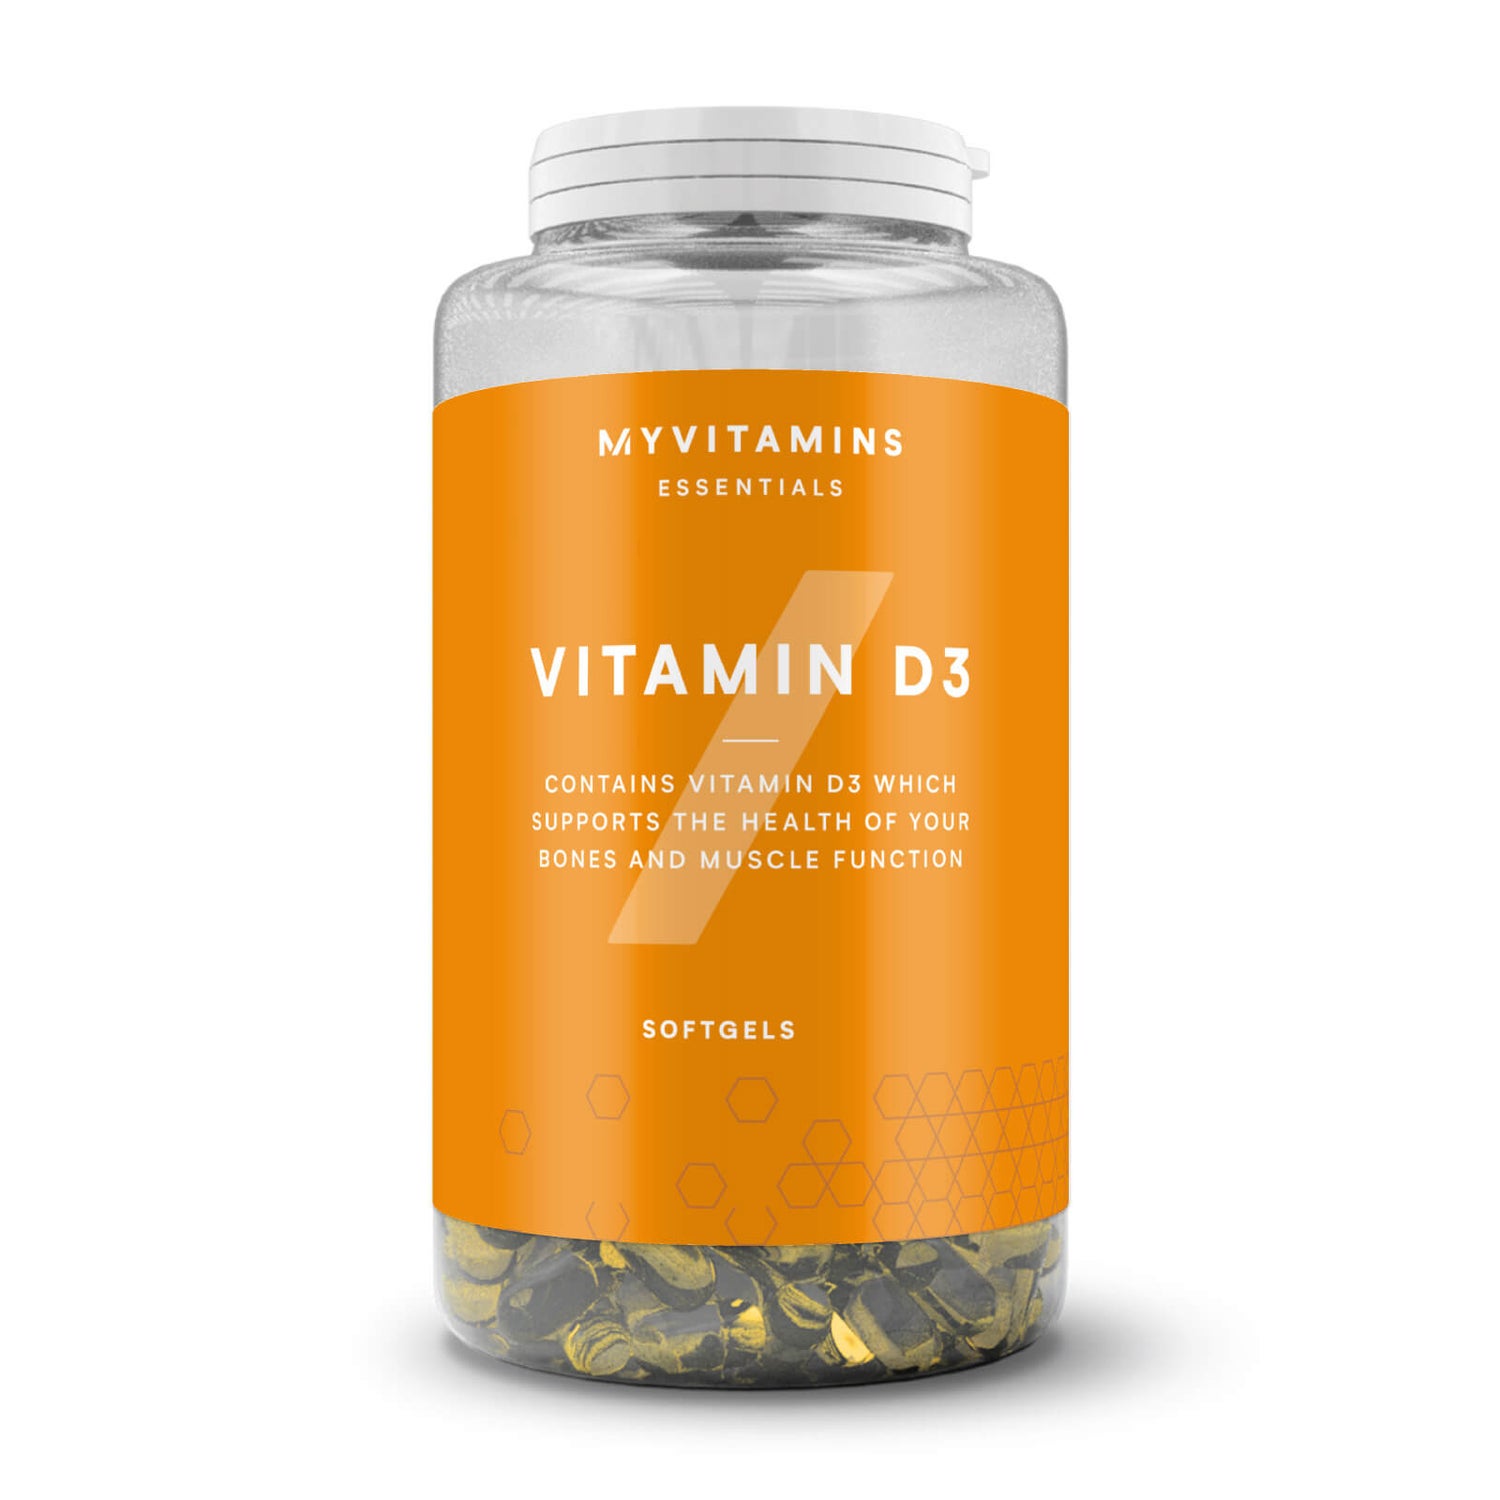 Vitamina D3 in Capsule - 180Softgel - Non-Vegan